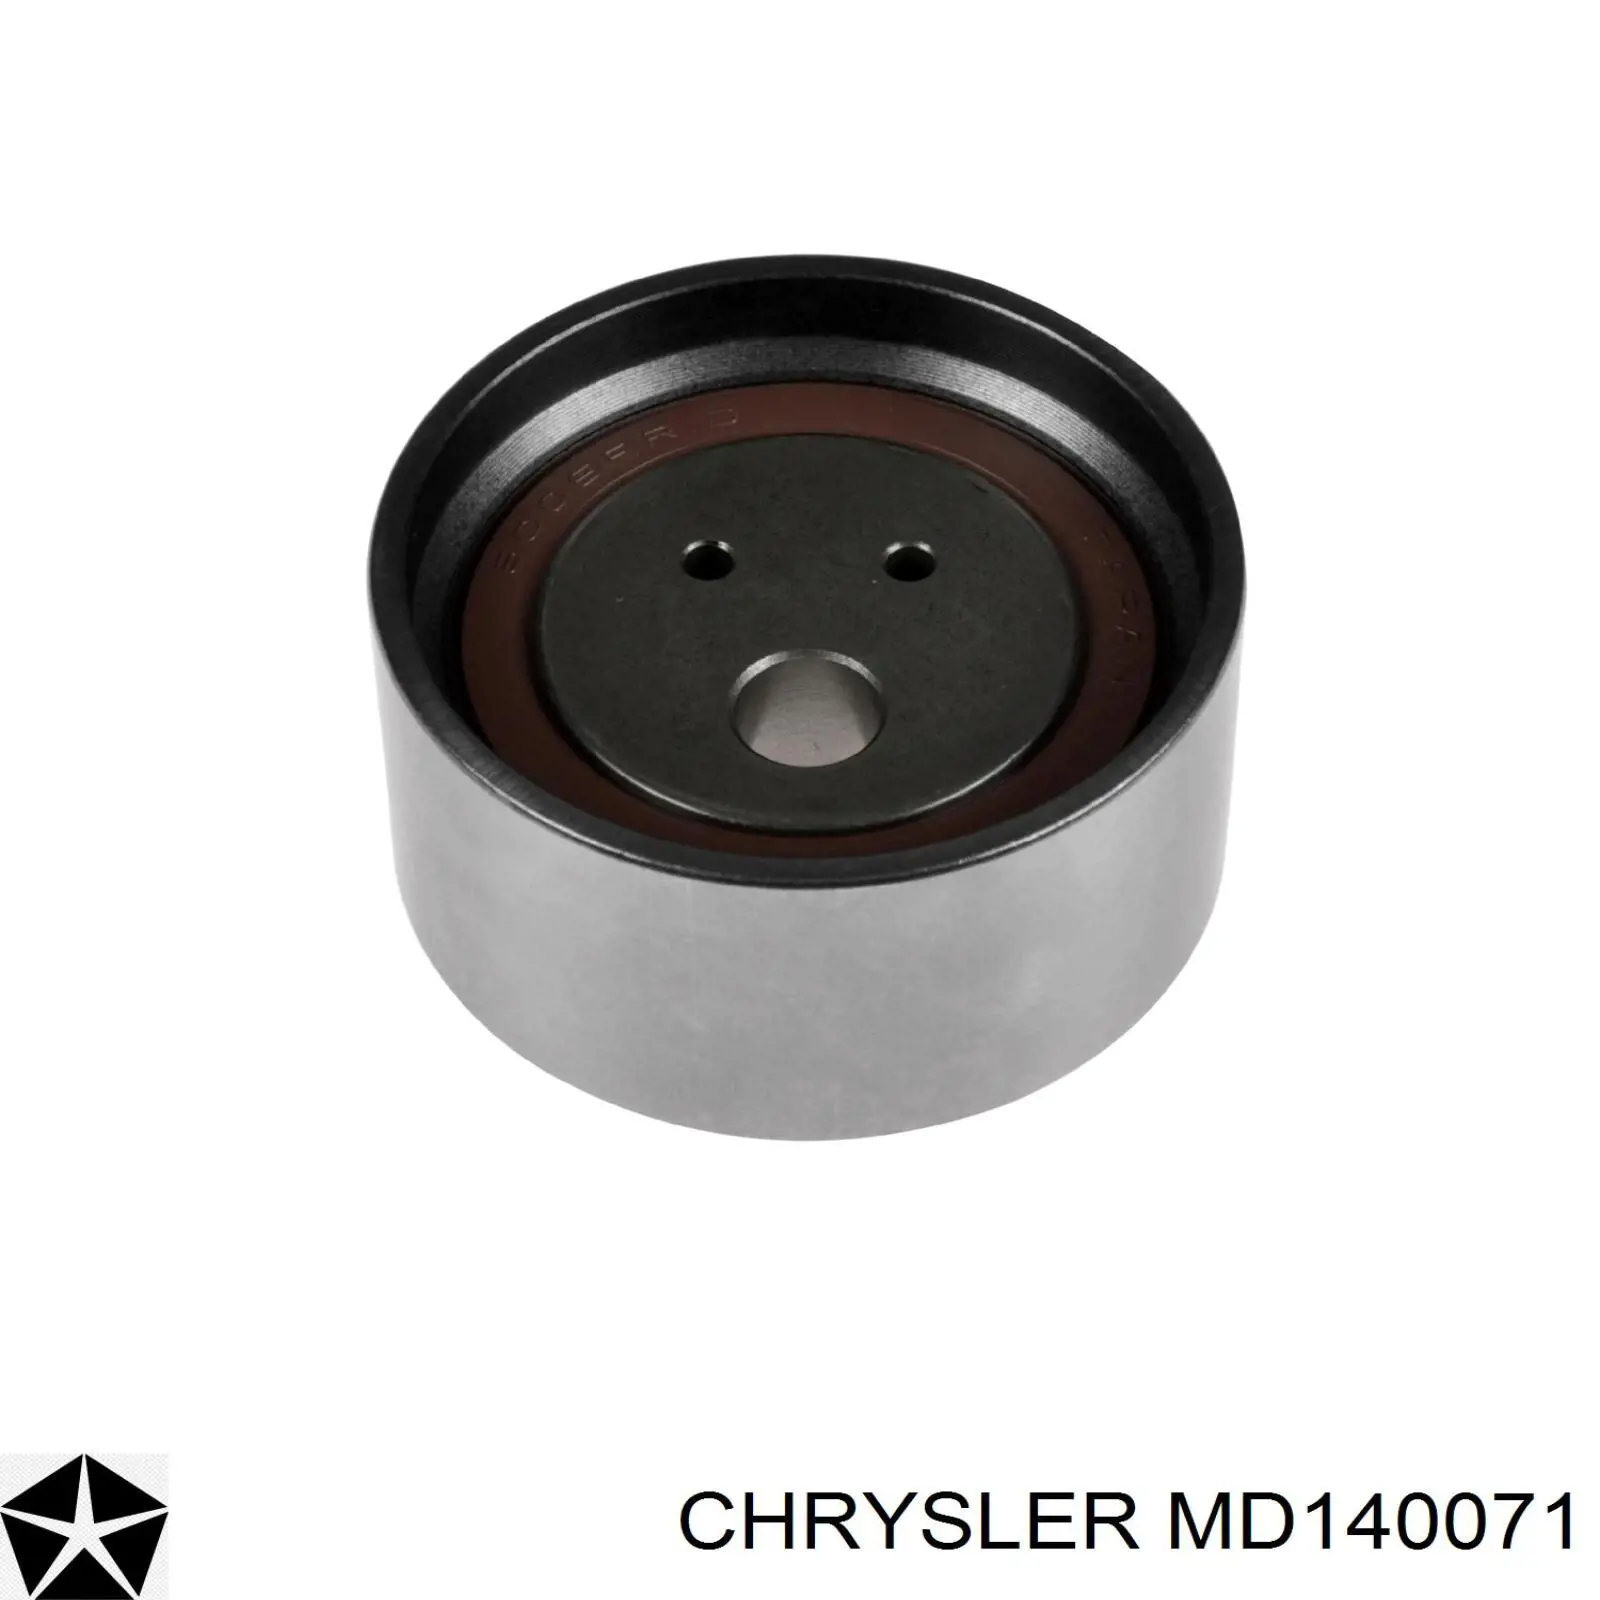 MD140071 Chrysler rodillo, cadena de distribución